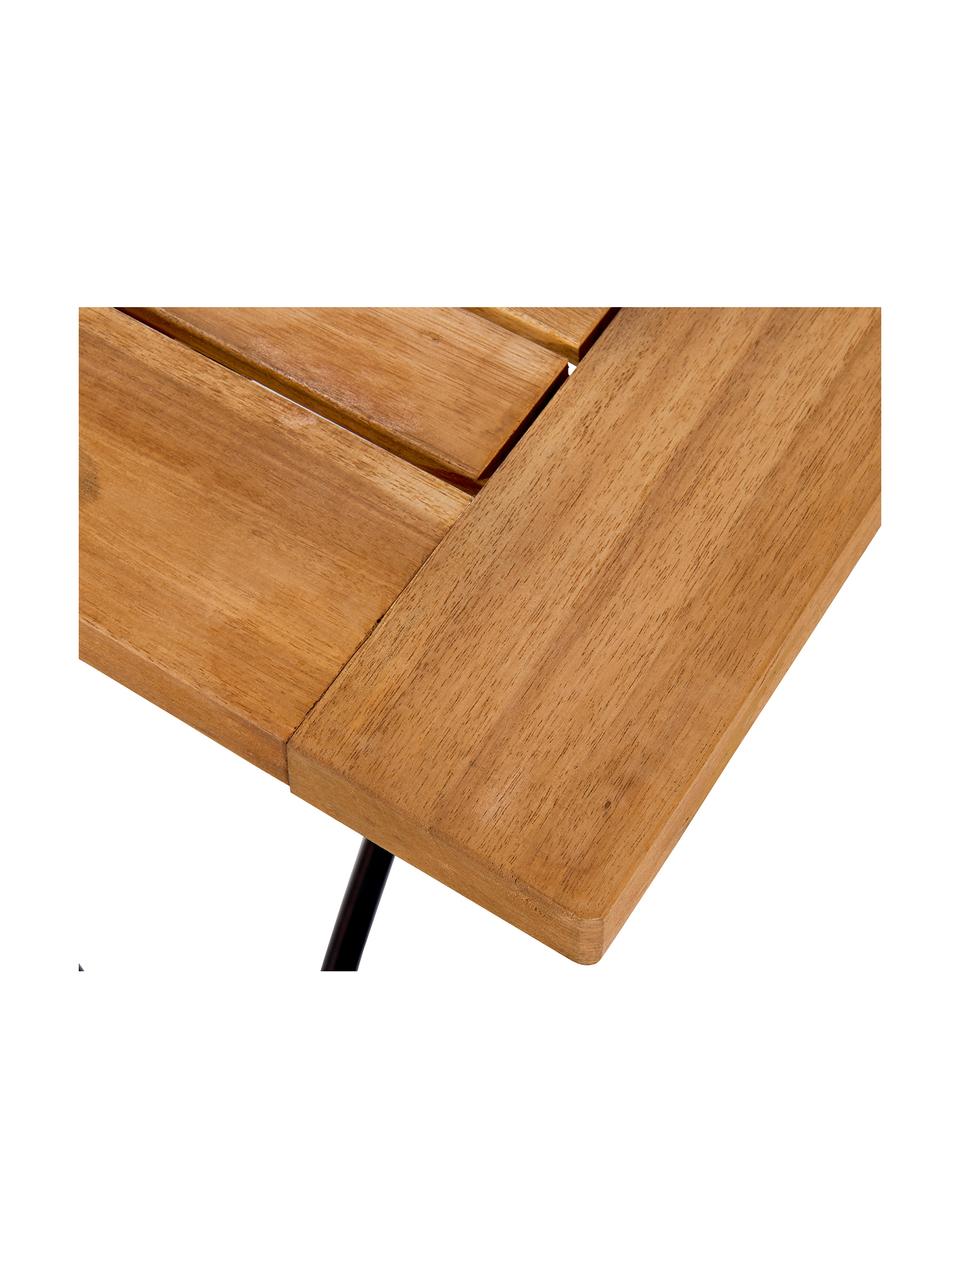 Stół ogrodowy składany z drewnianym blatem Parklife, Blat: drewno akacjowe, olejowan, Stelaż: metal ocynkowany, malowan, Stelaż: czarny, matowy Korpus: drewno akacjowe, S 130 x W 75 cm